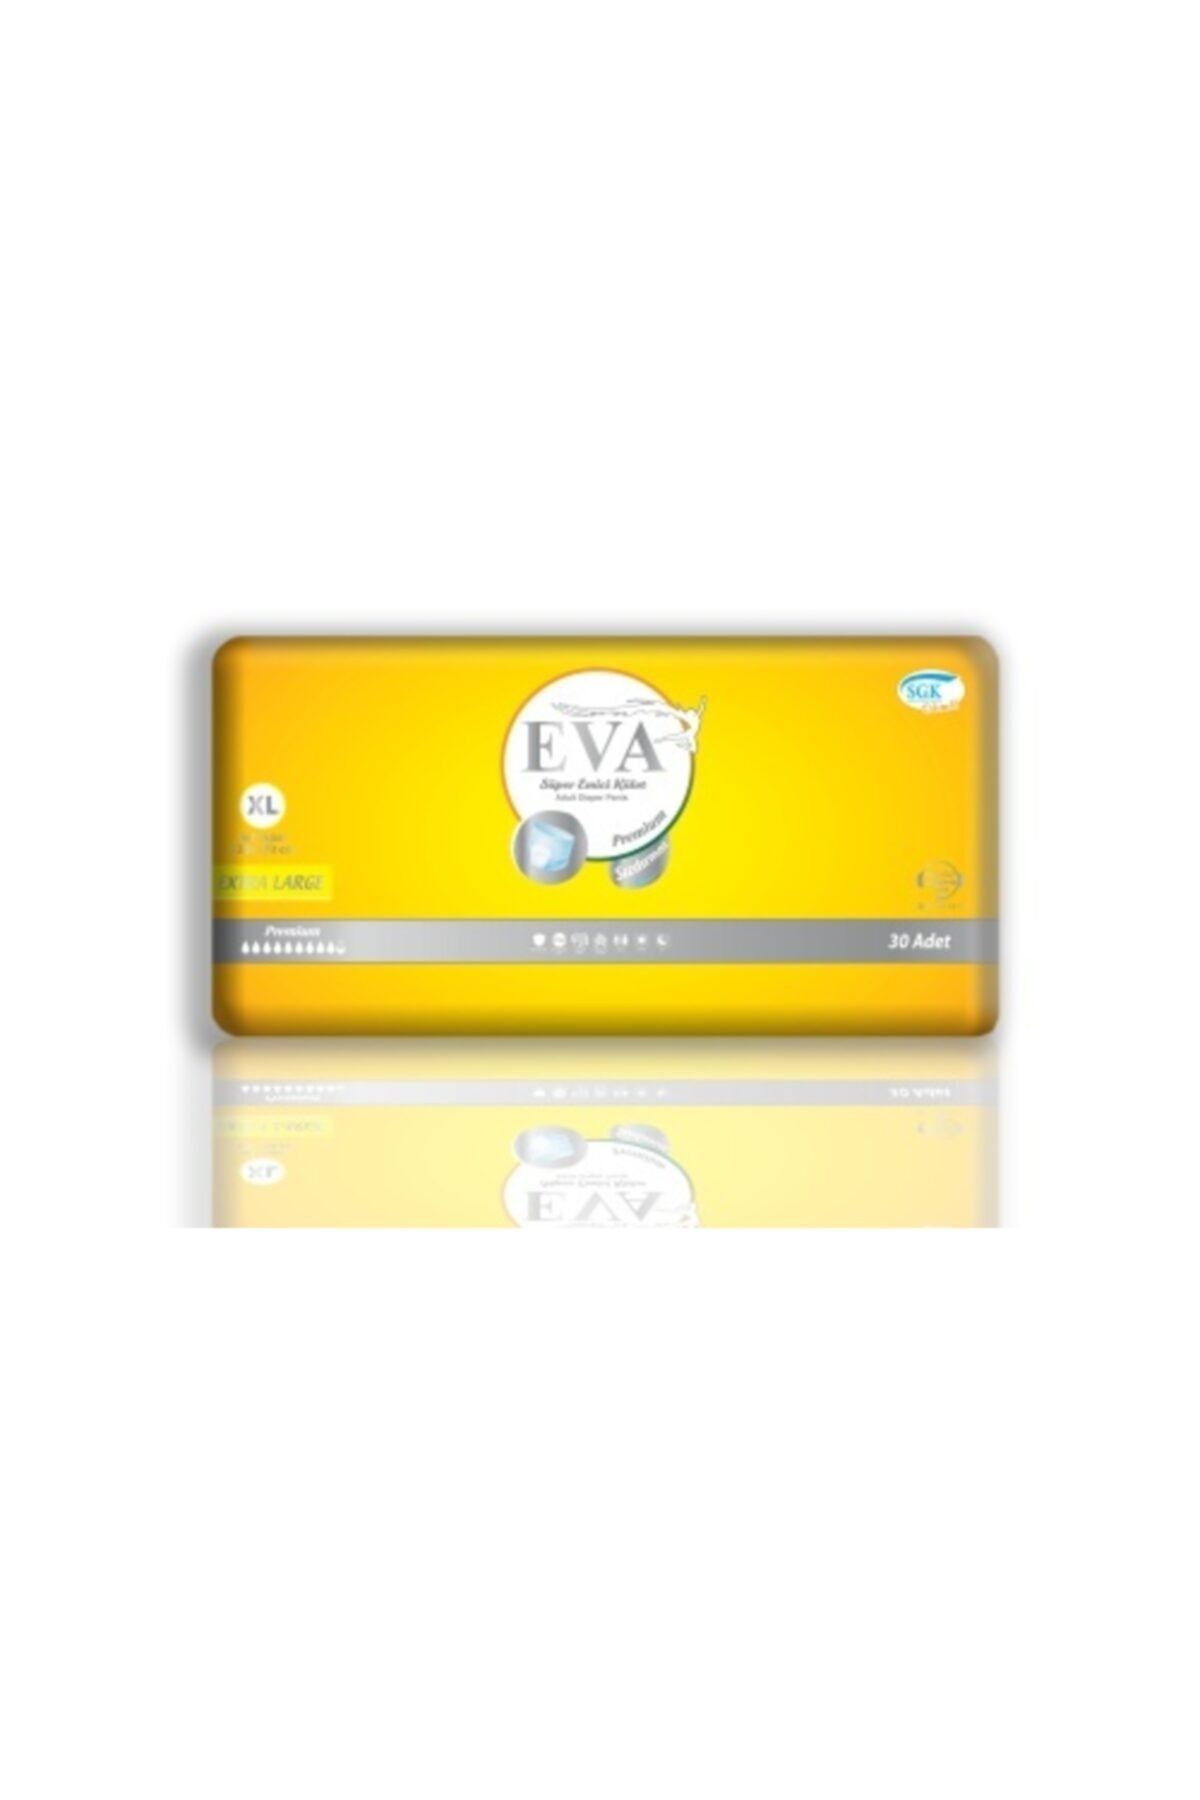 EVA Premium Kadın Erkek Emici Külot Hasta Bezi 30 Lu Small Medium Large Xlarge